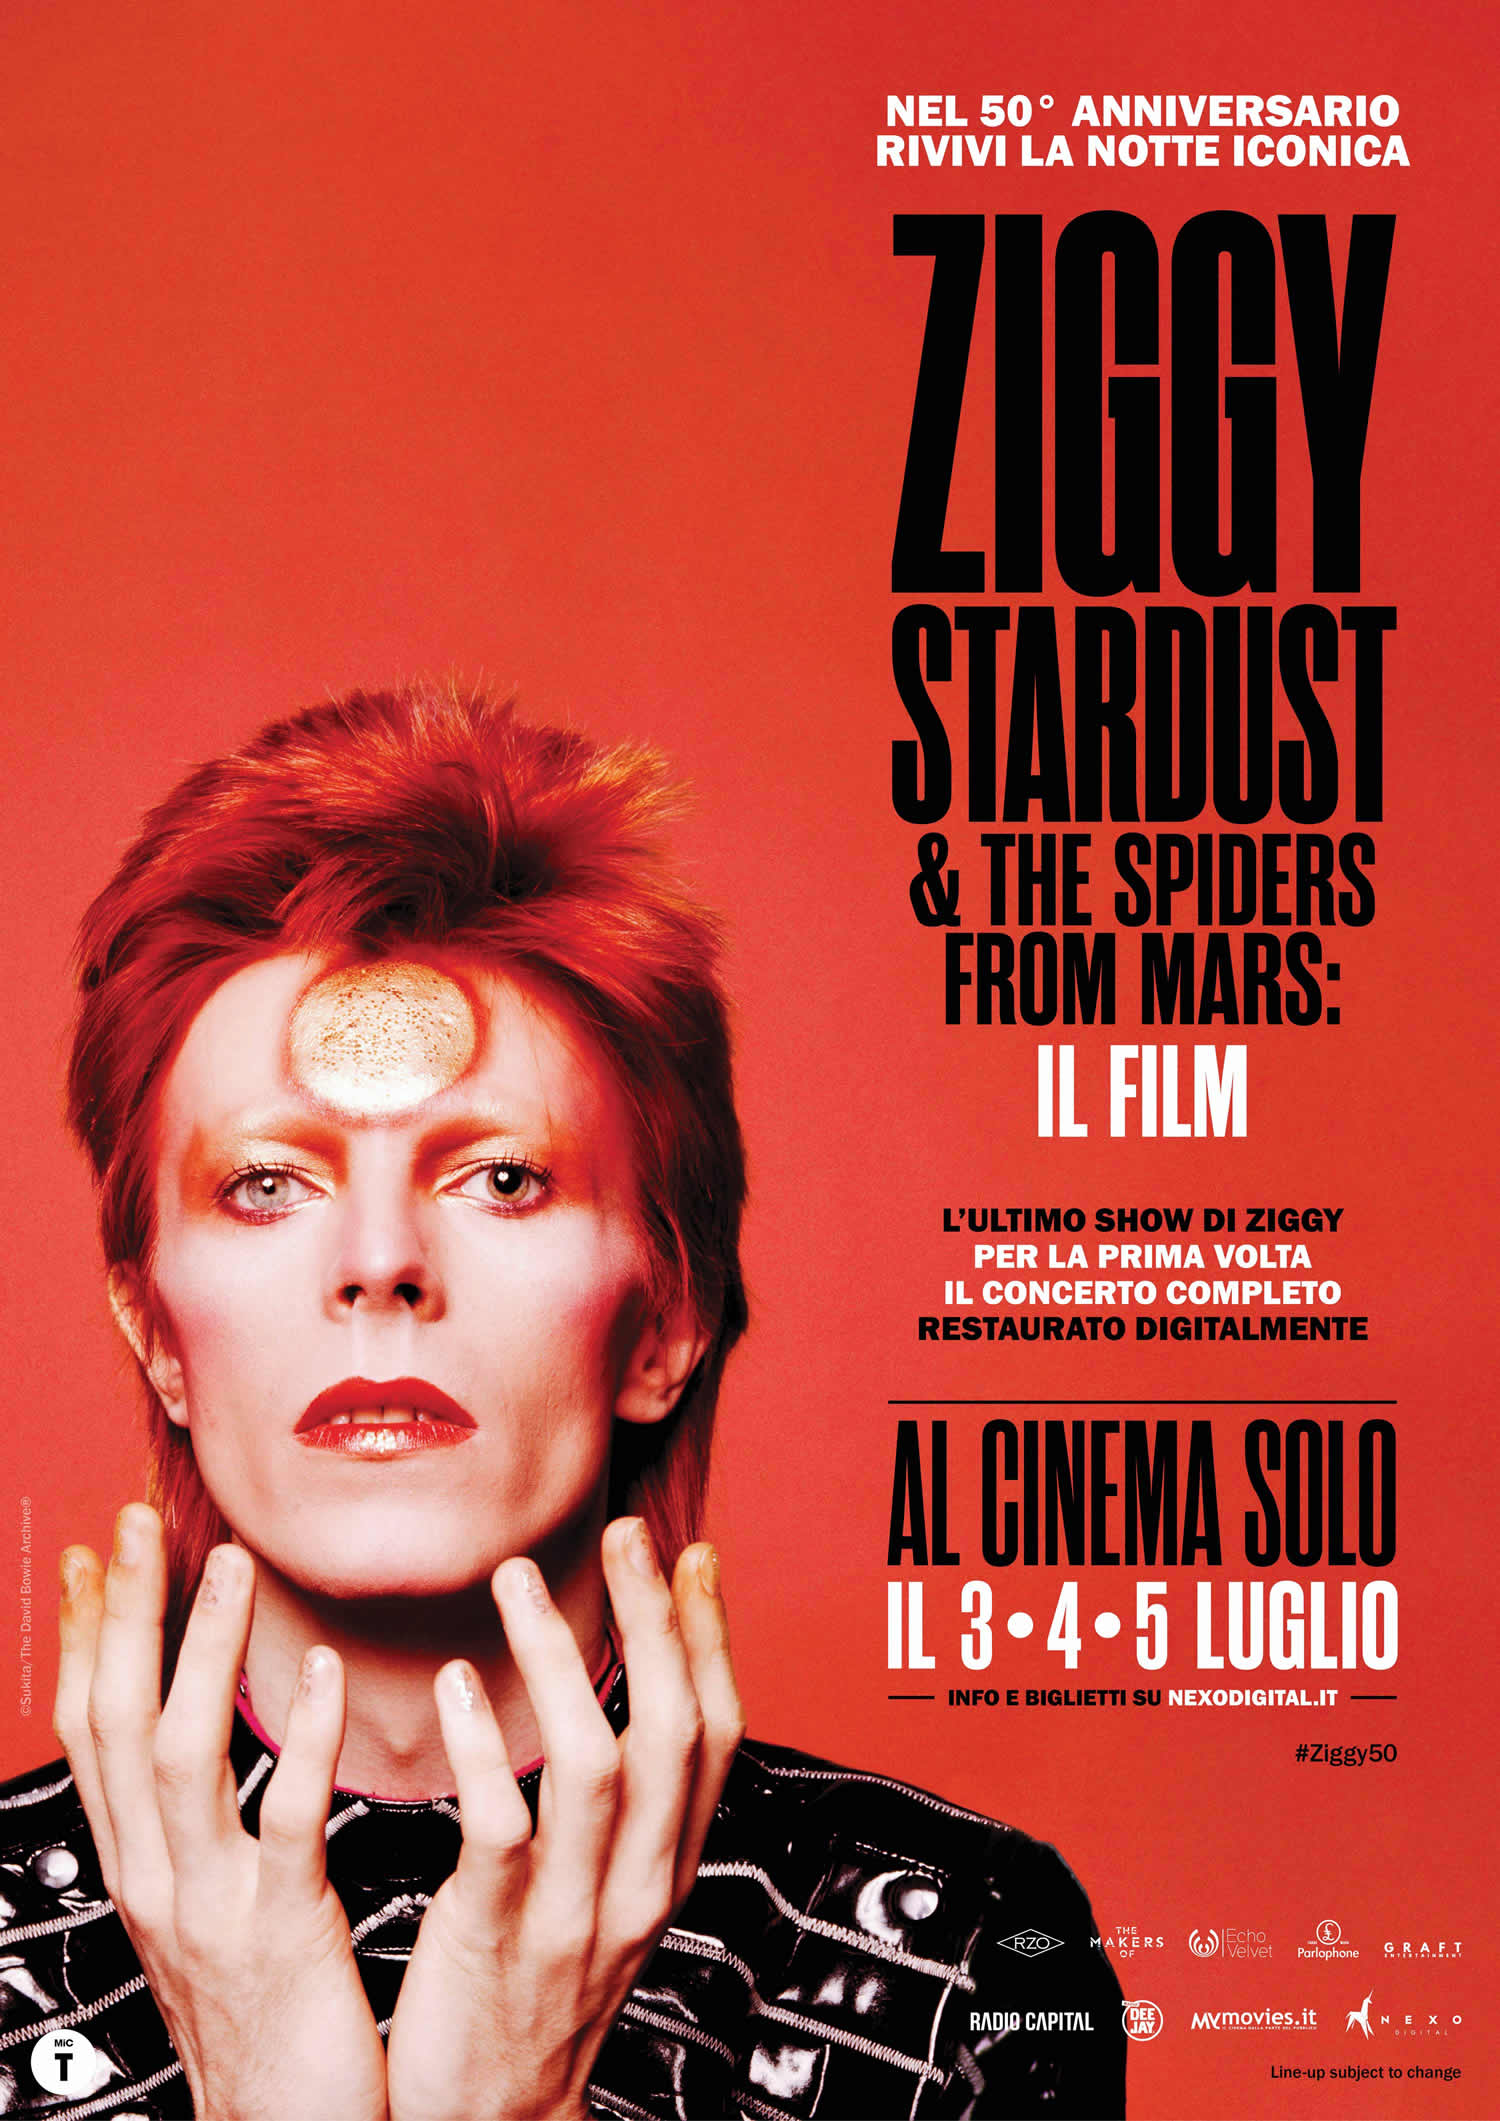 Ziggy Stardust and the Spiders from Mars: torna al cinema il leggendario film-concerto di David Bowie